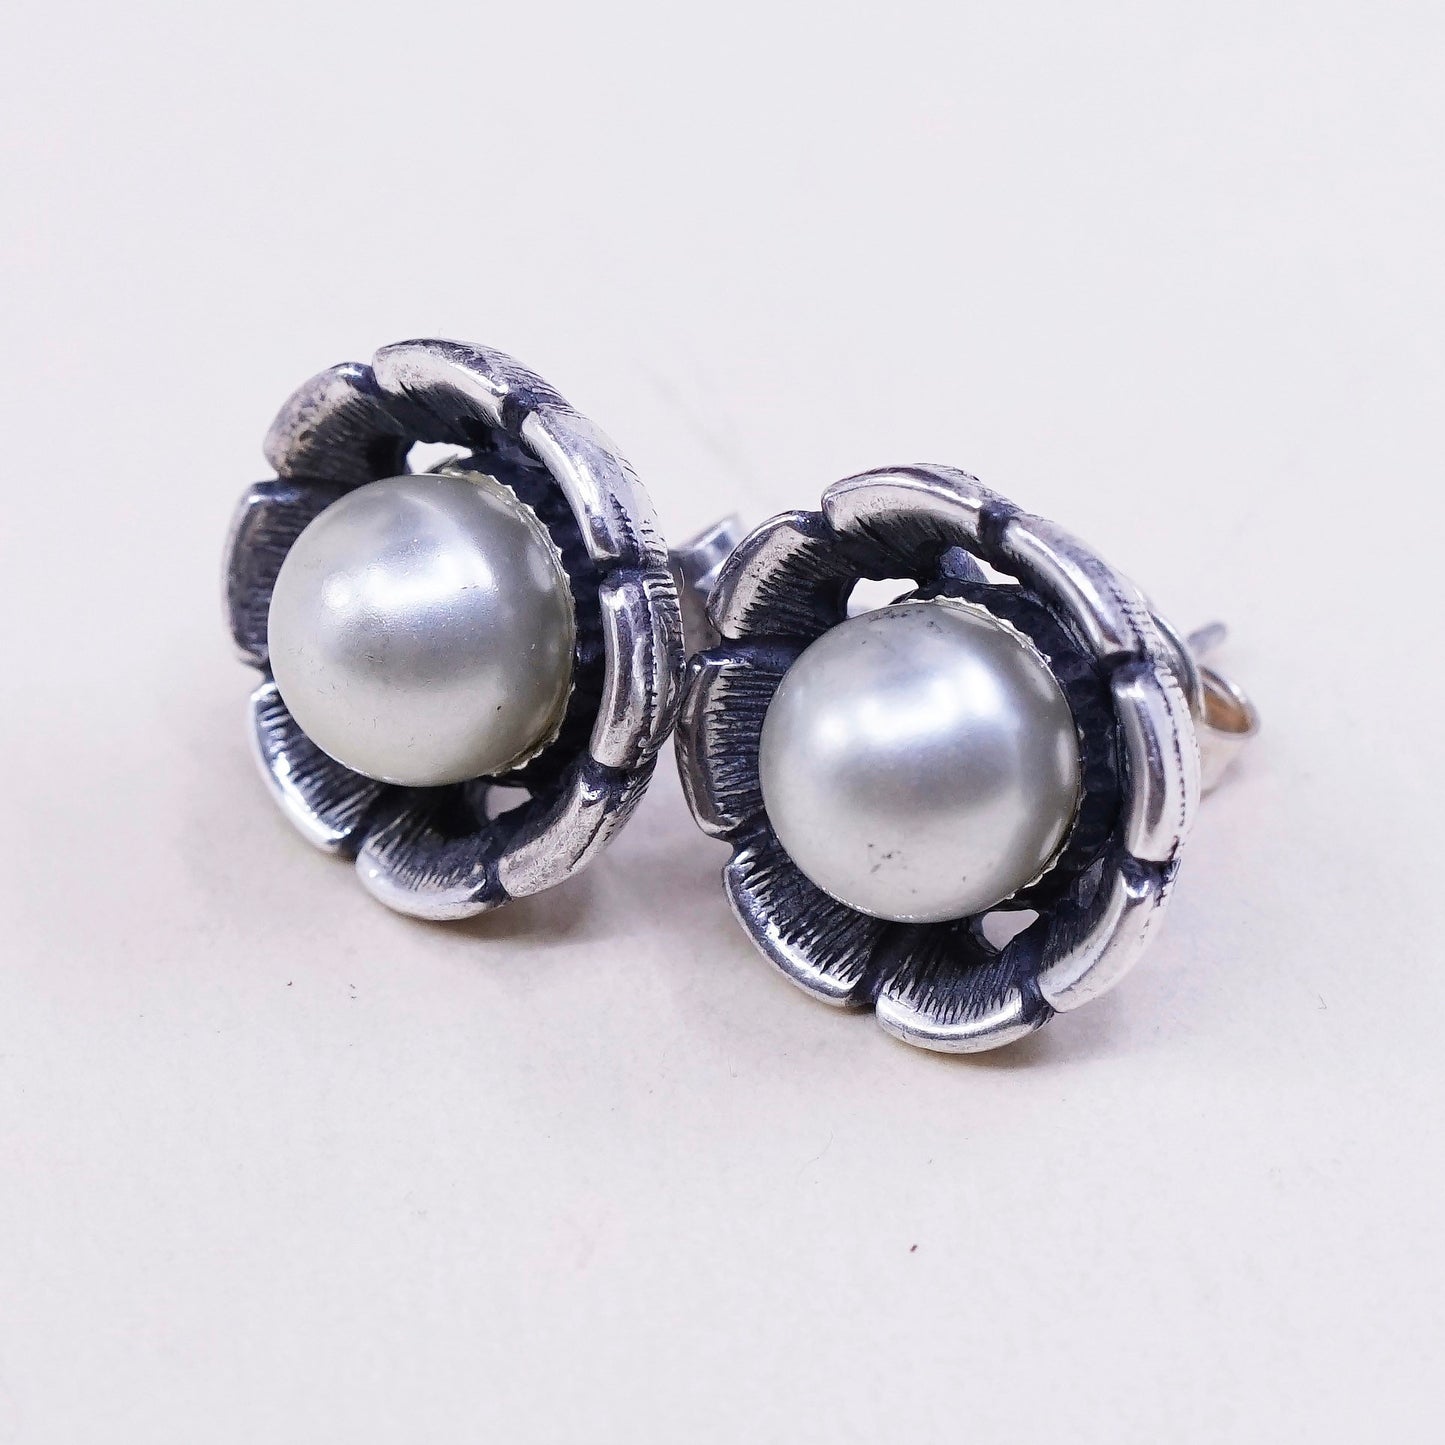 Vintage Sterling silver handmade earrings, 925 flower studs with pearl